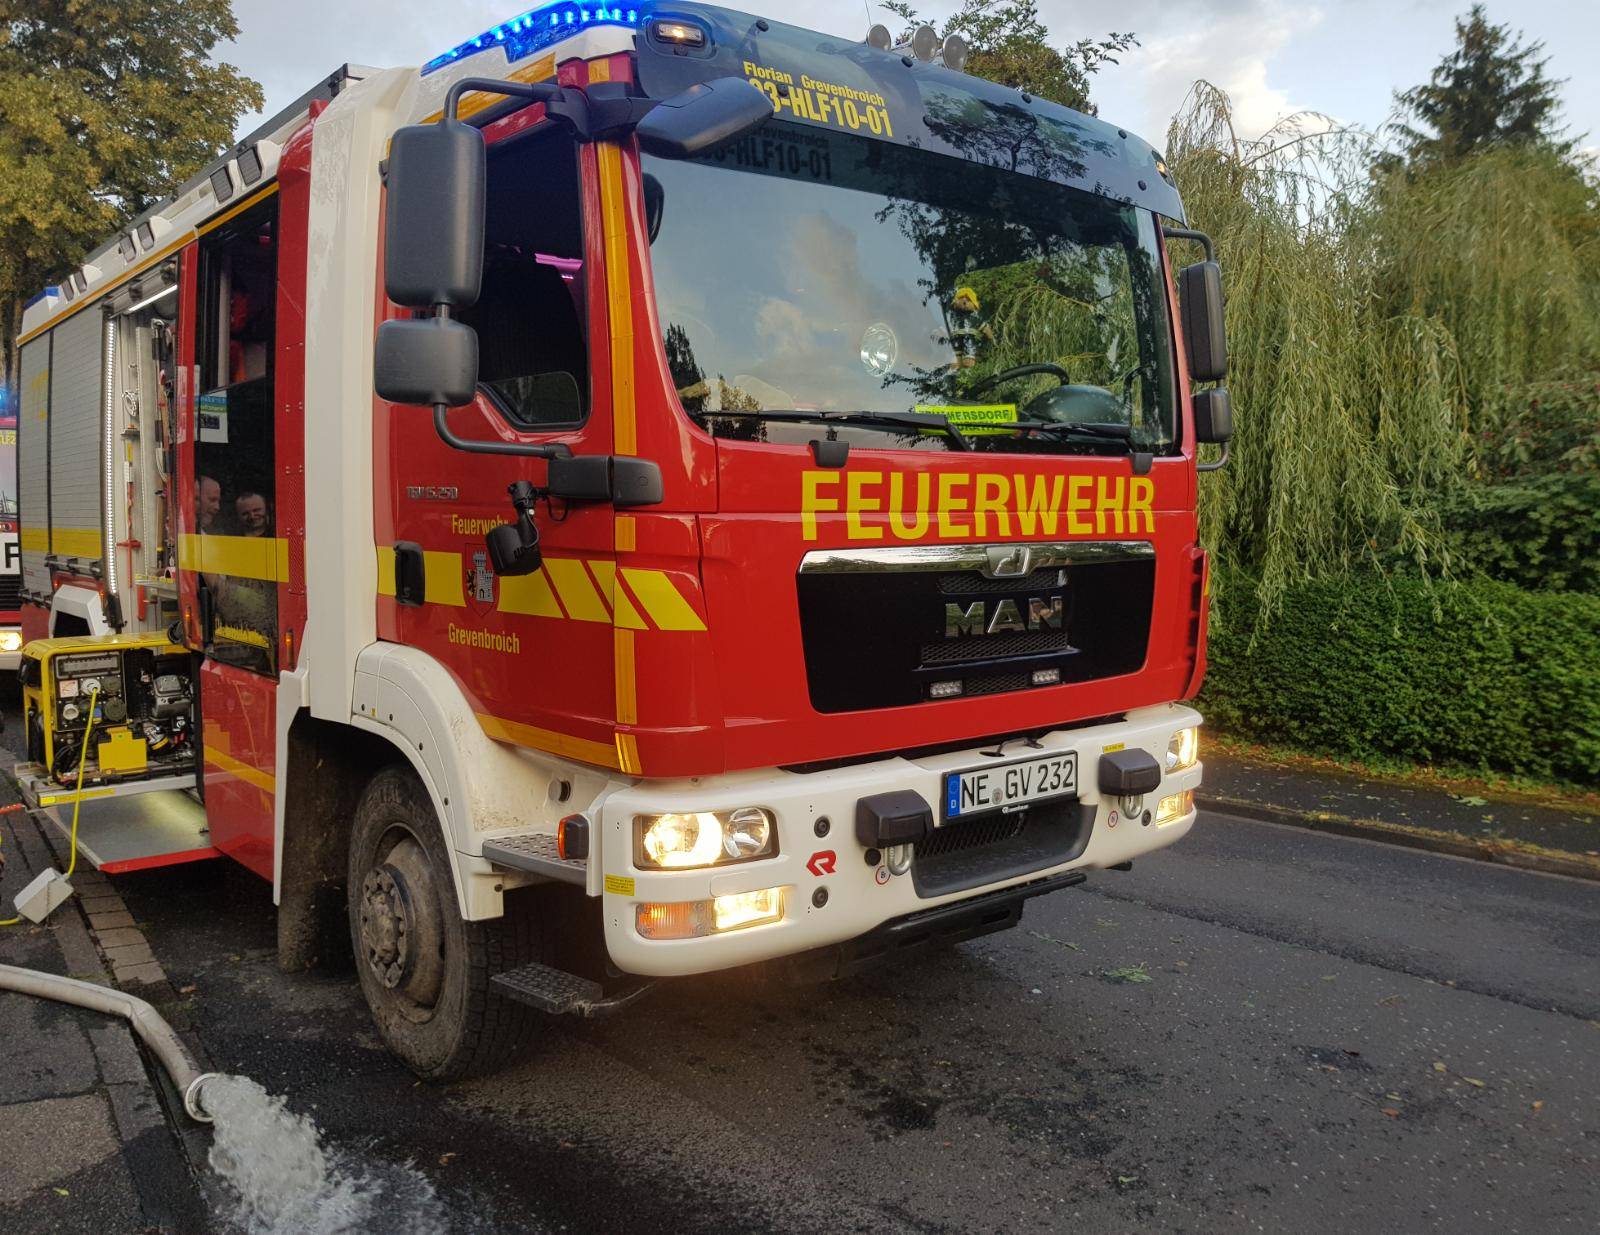 Über 220 Meldungen bescherten der Feuerwehr Grevenbroich reichlich Arbeit